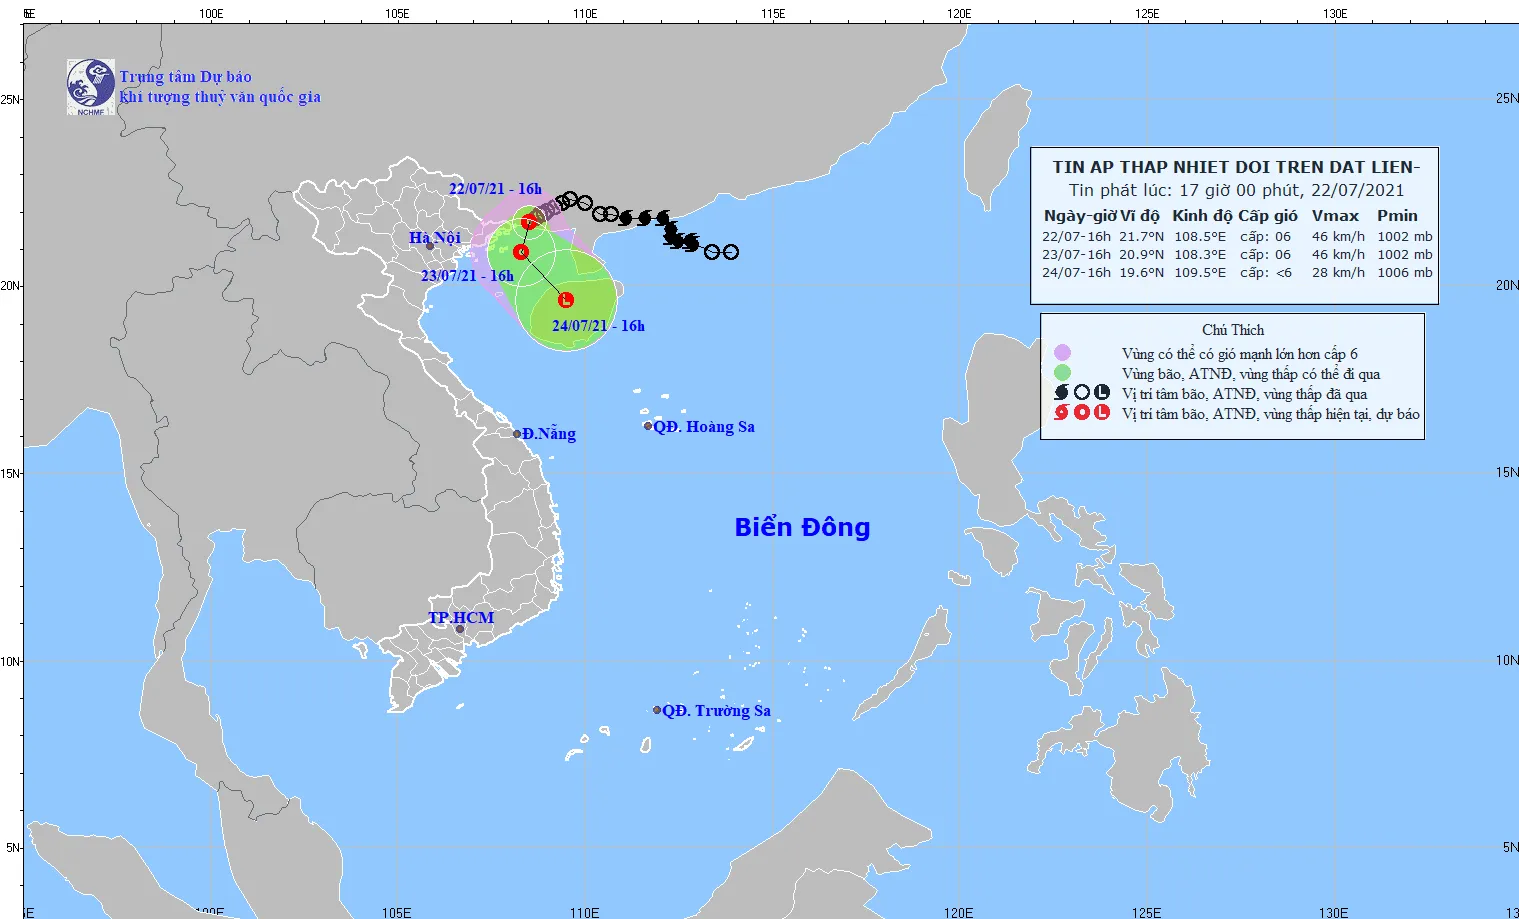 áp thấp nhiệt đới mạnh cấp 6 cách Móng Cái (Quảng Ninh) khoảng 60km về phía Đông Đông Bắc 1